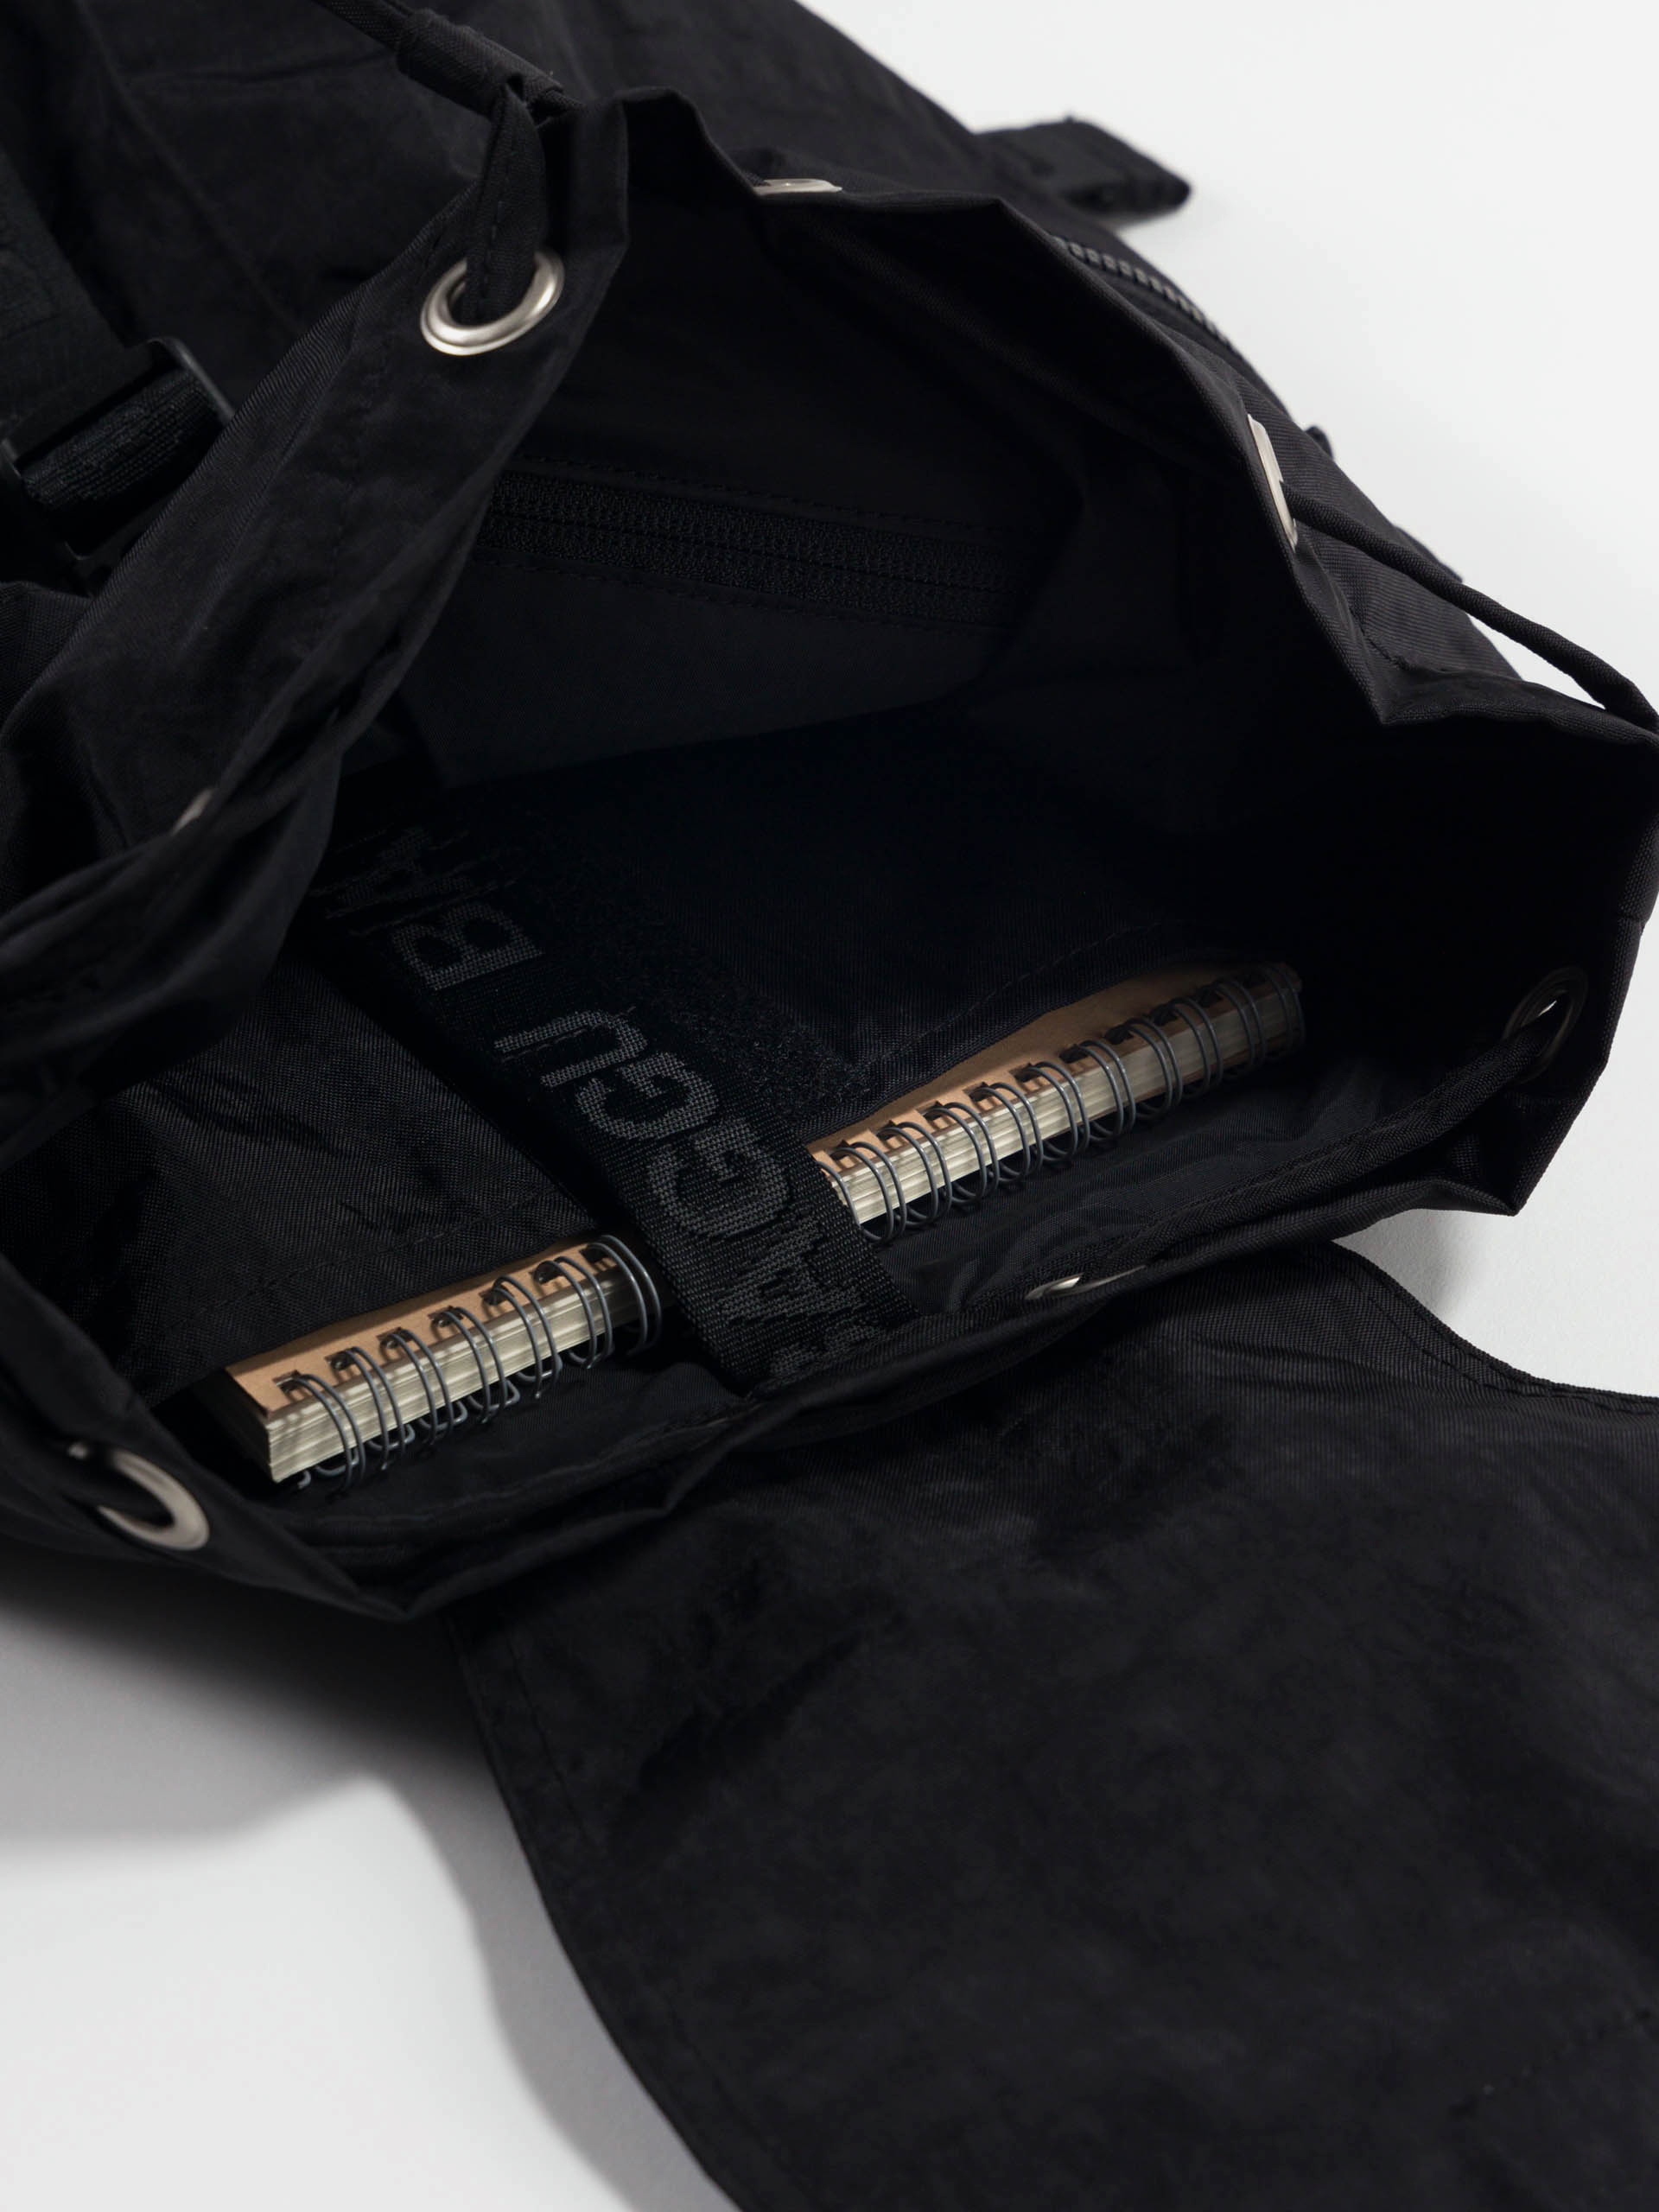 sport-black-backpack-recycled-laptop-pockets-baggu-washable-matchboxathens